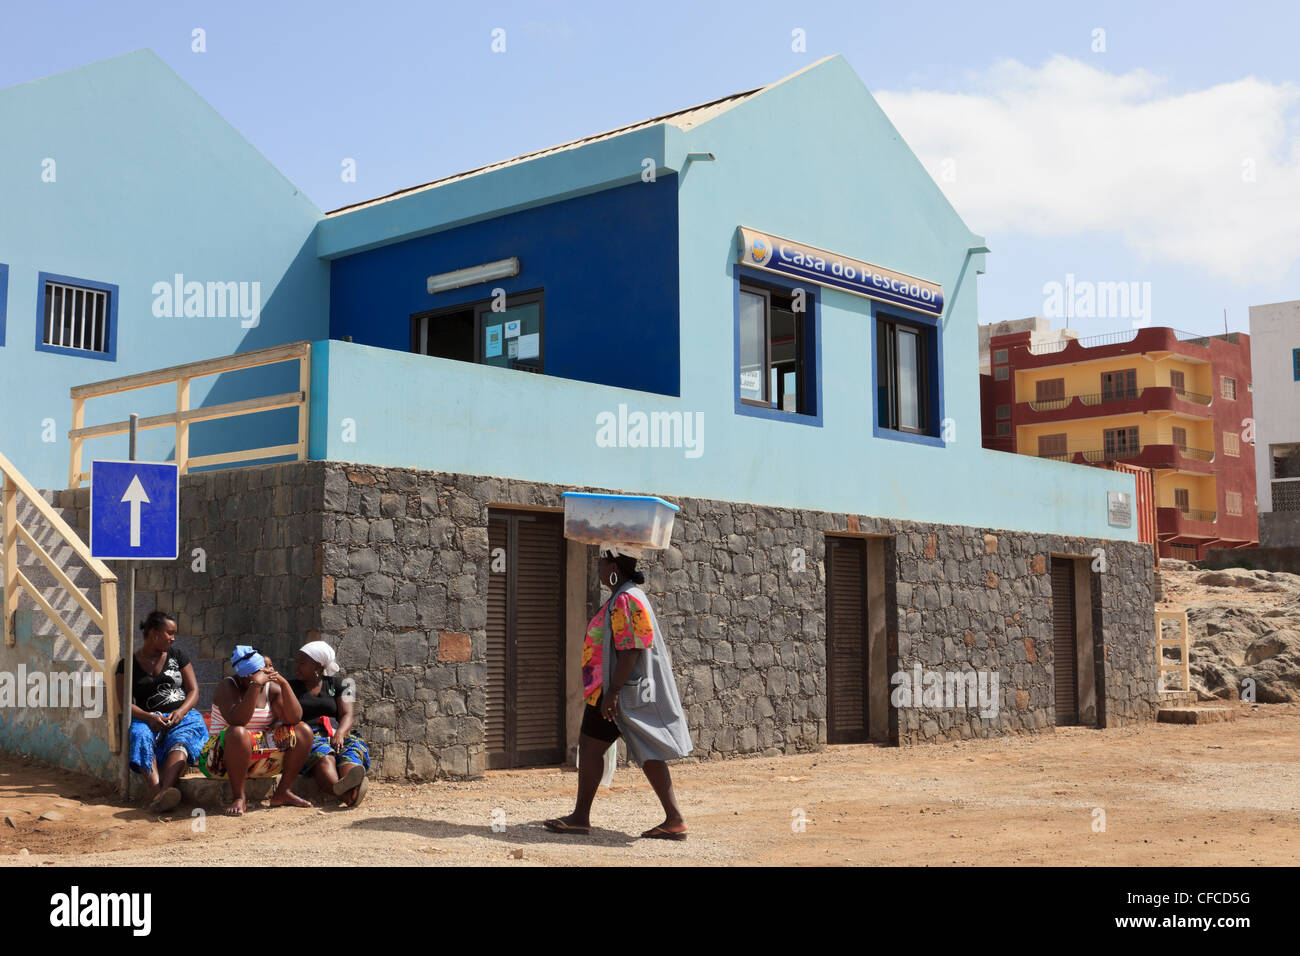 Sal Rei, Boa Vista, Kap Verde Inseln. Einheimische Frauen außerhalb Casa tun Pescador oder Fischer Zentrum Sozialverein. Stockfoto